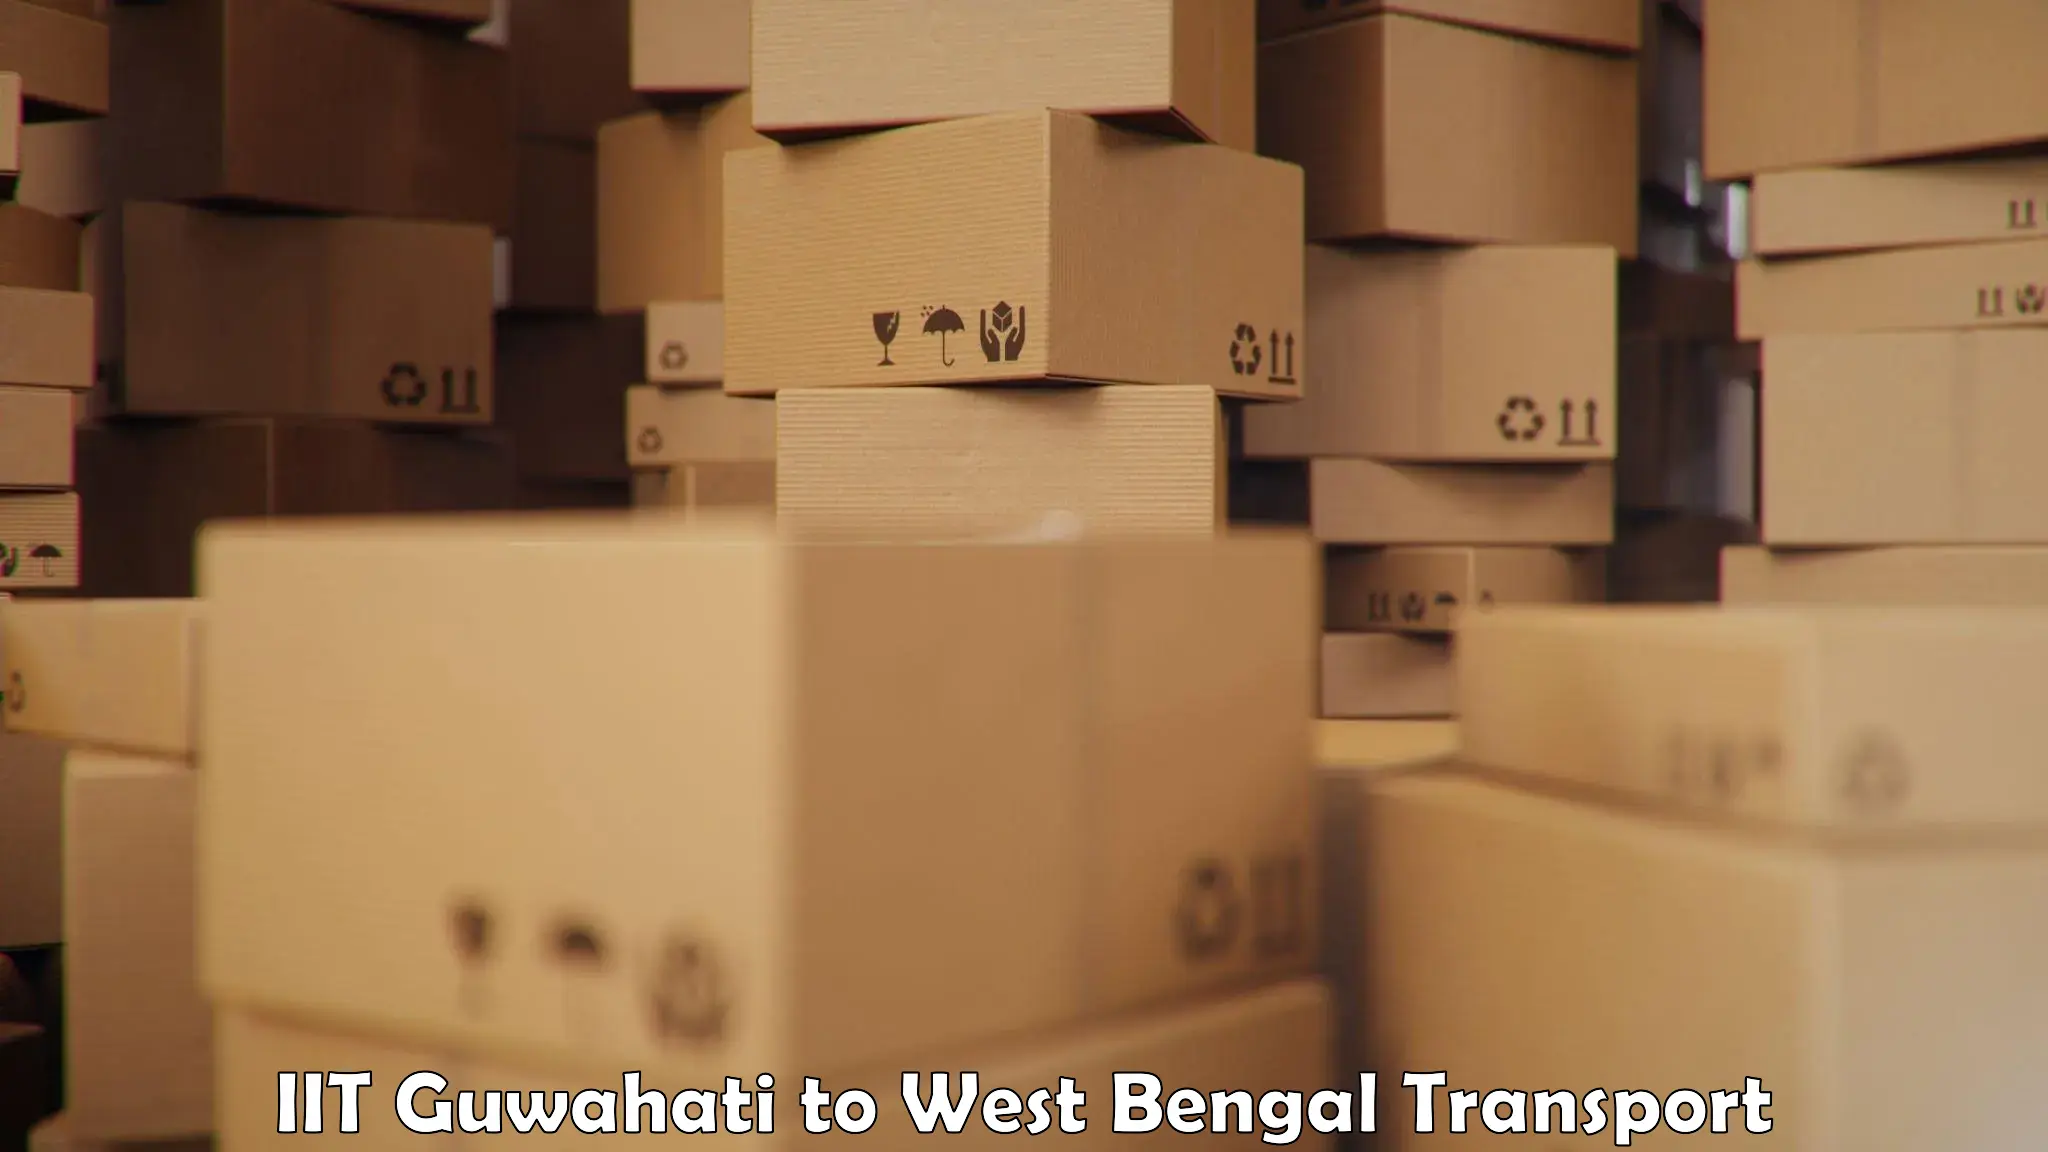 Truck transport companies in India IIT Guwahati to Naihati